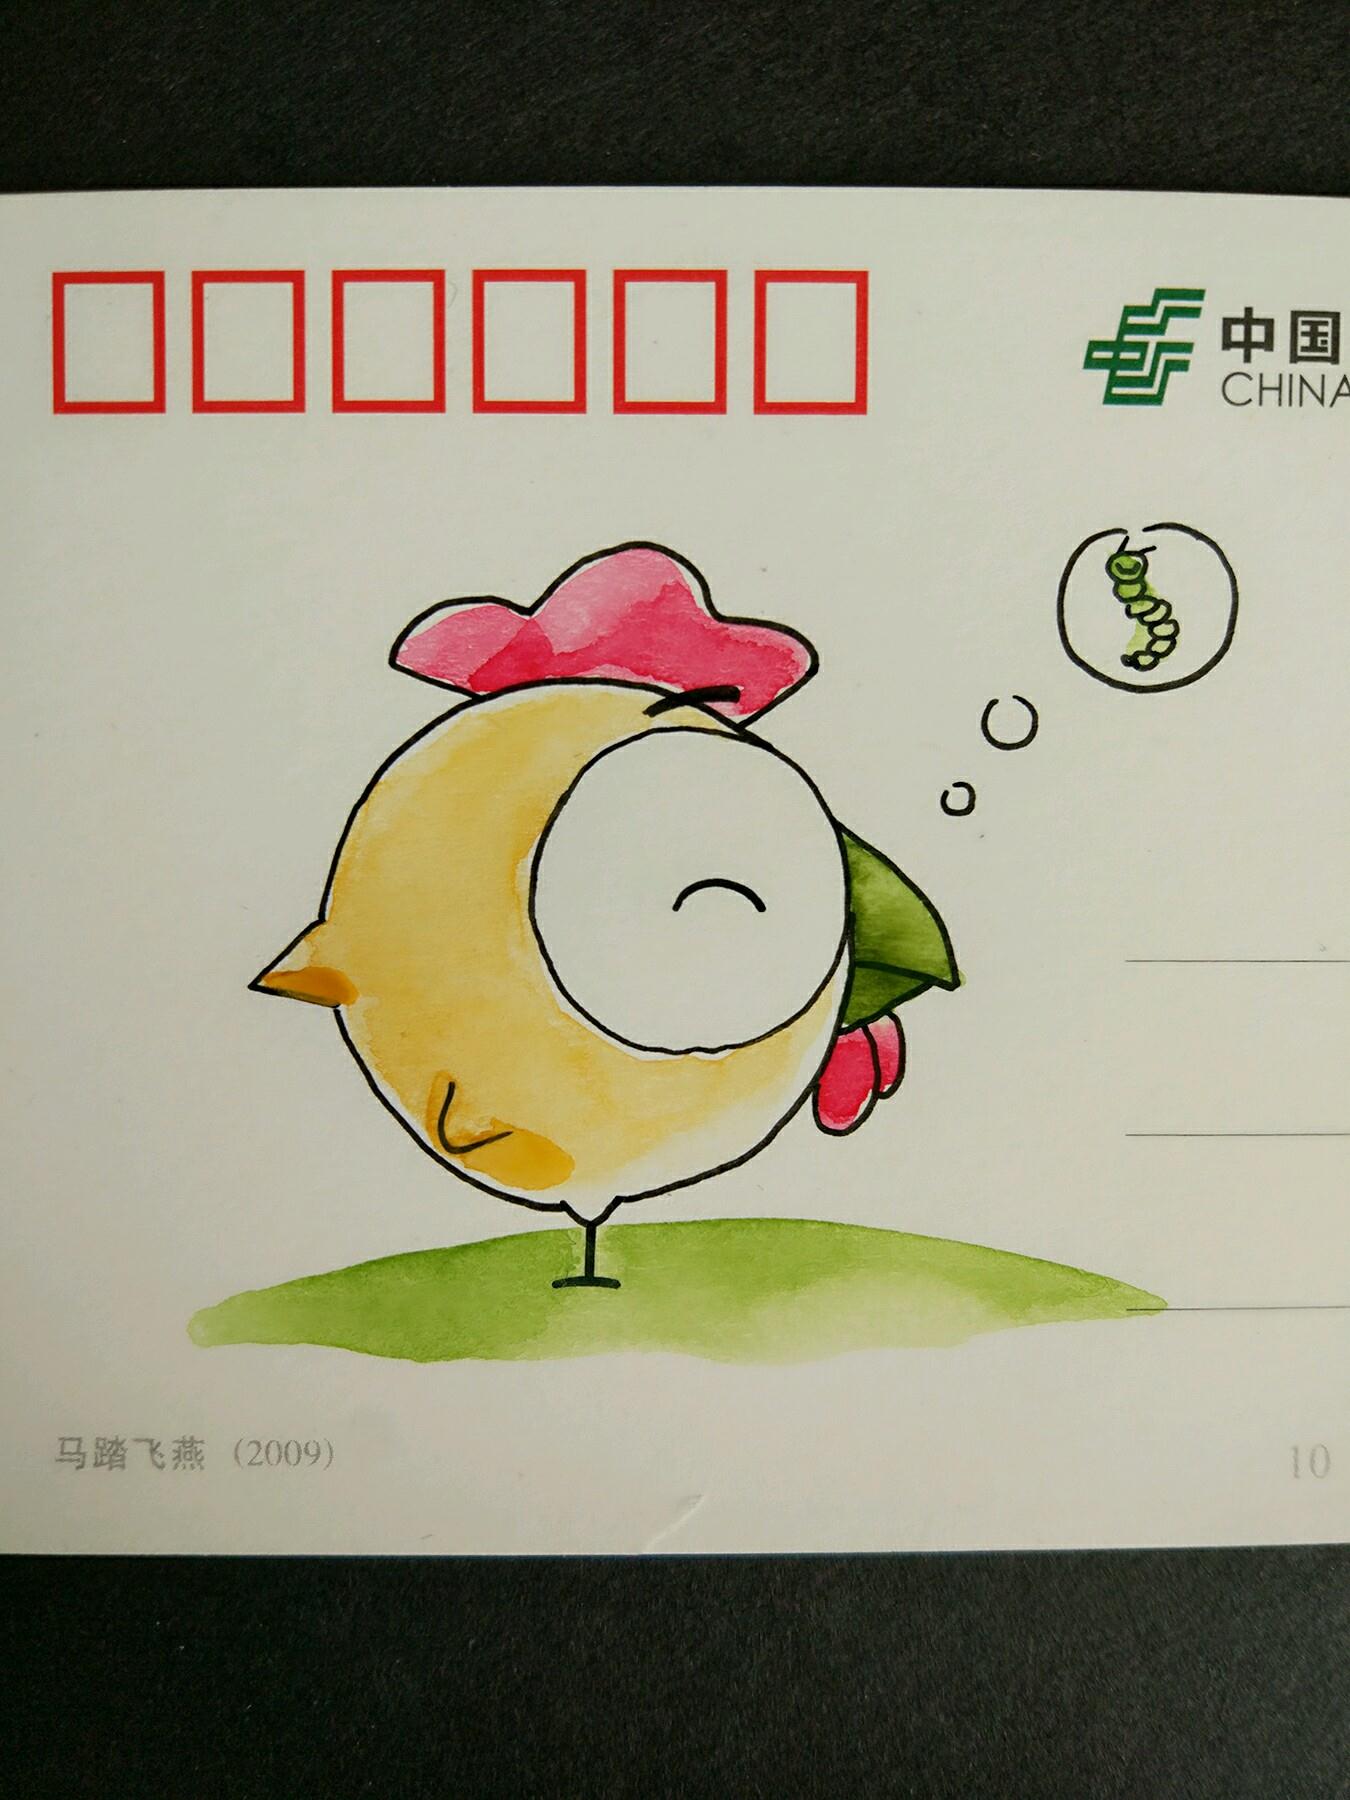  简单可爱的儿童DIY手绘 明信片小鸡的制作方法